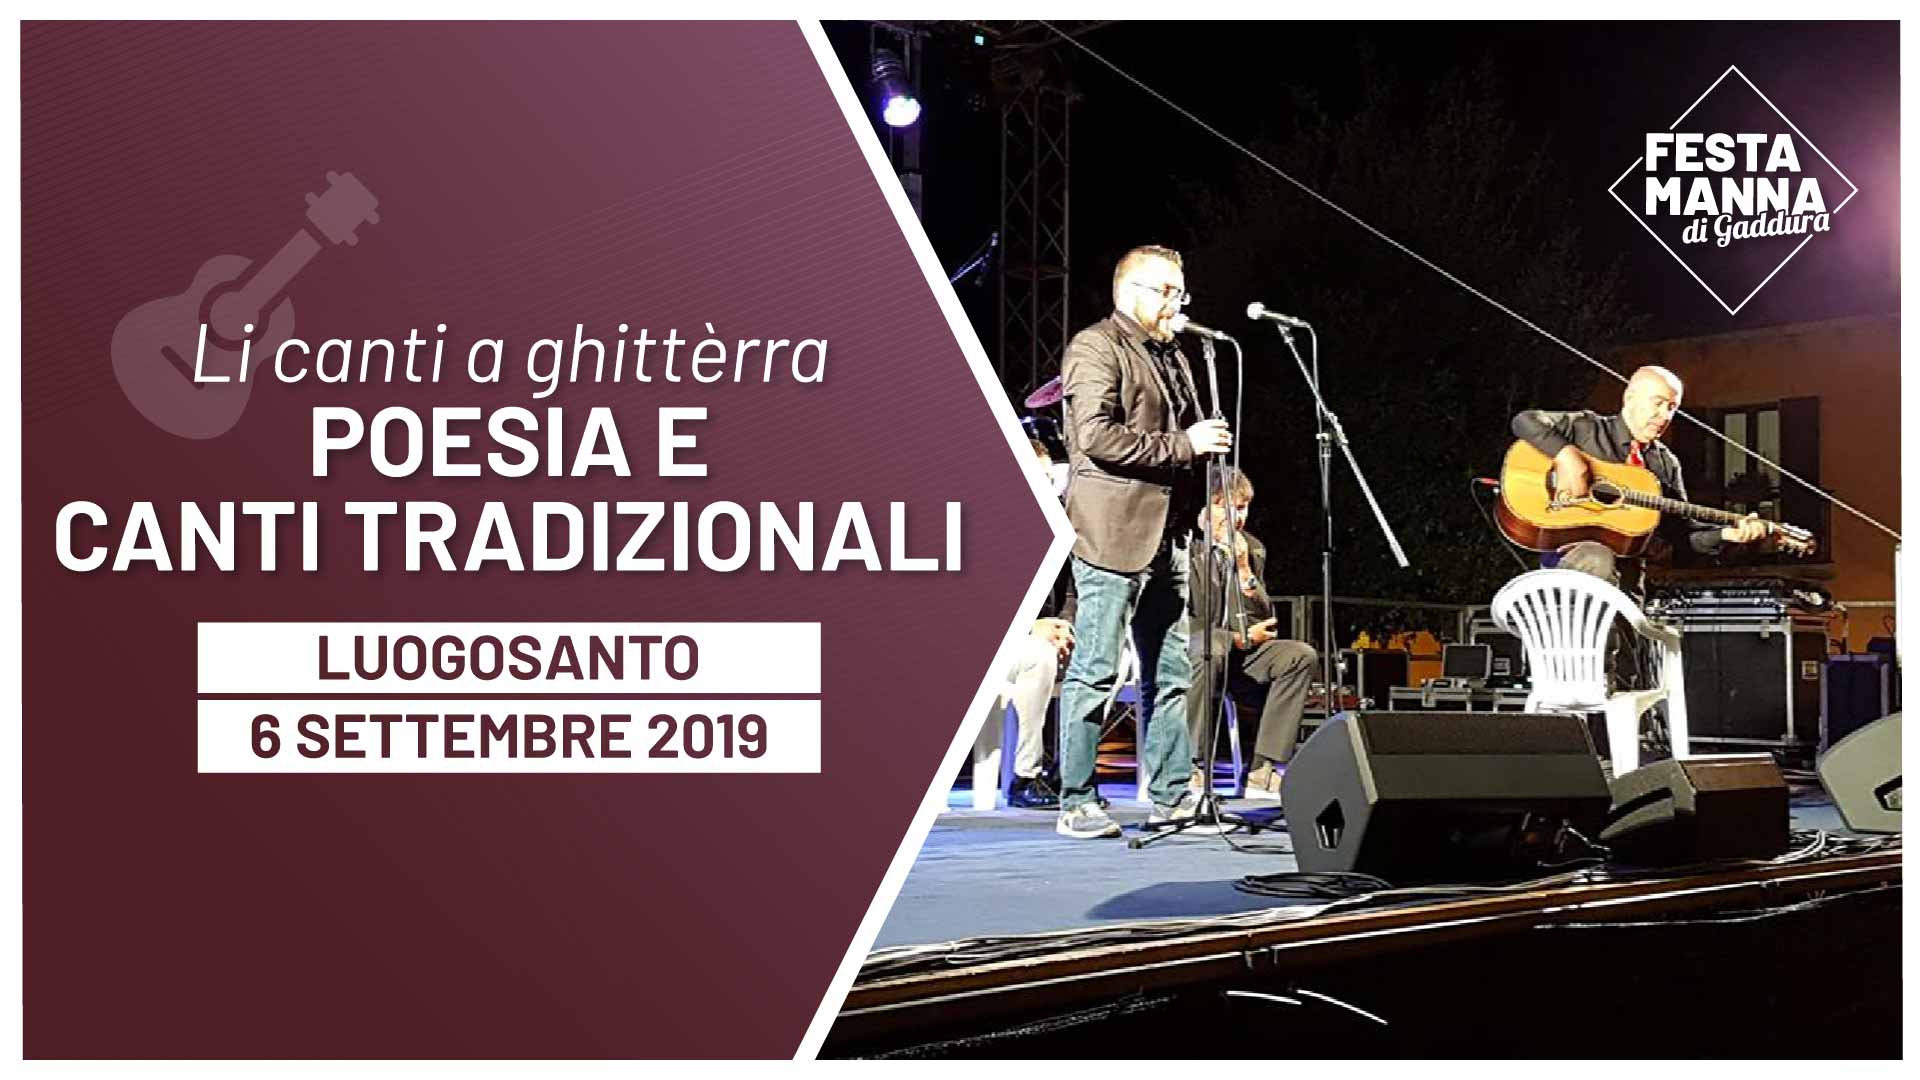 "Li canti a ghittèrra" musica e canto tradizionale gallurese | Festa Manna di Gaddura 2019